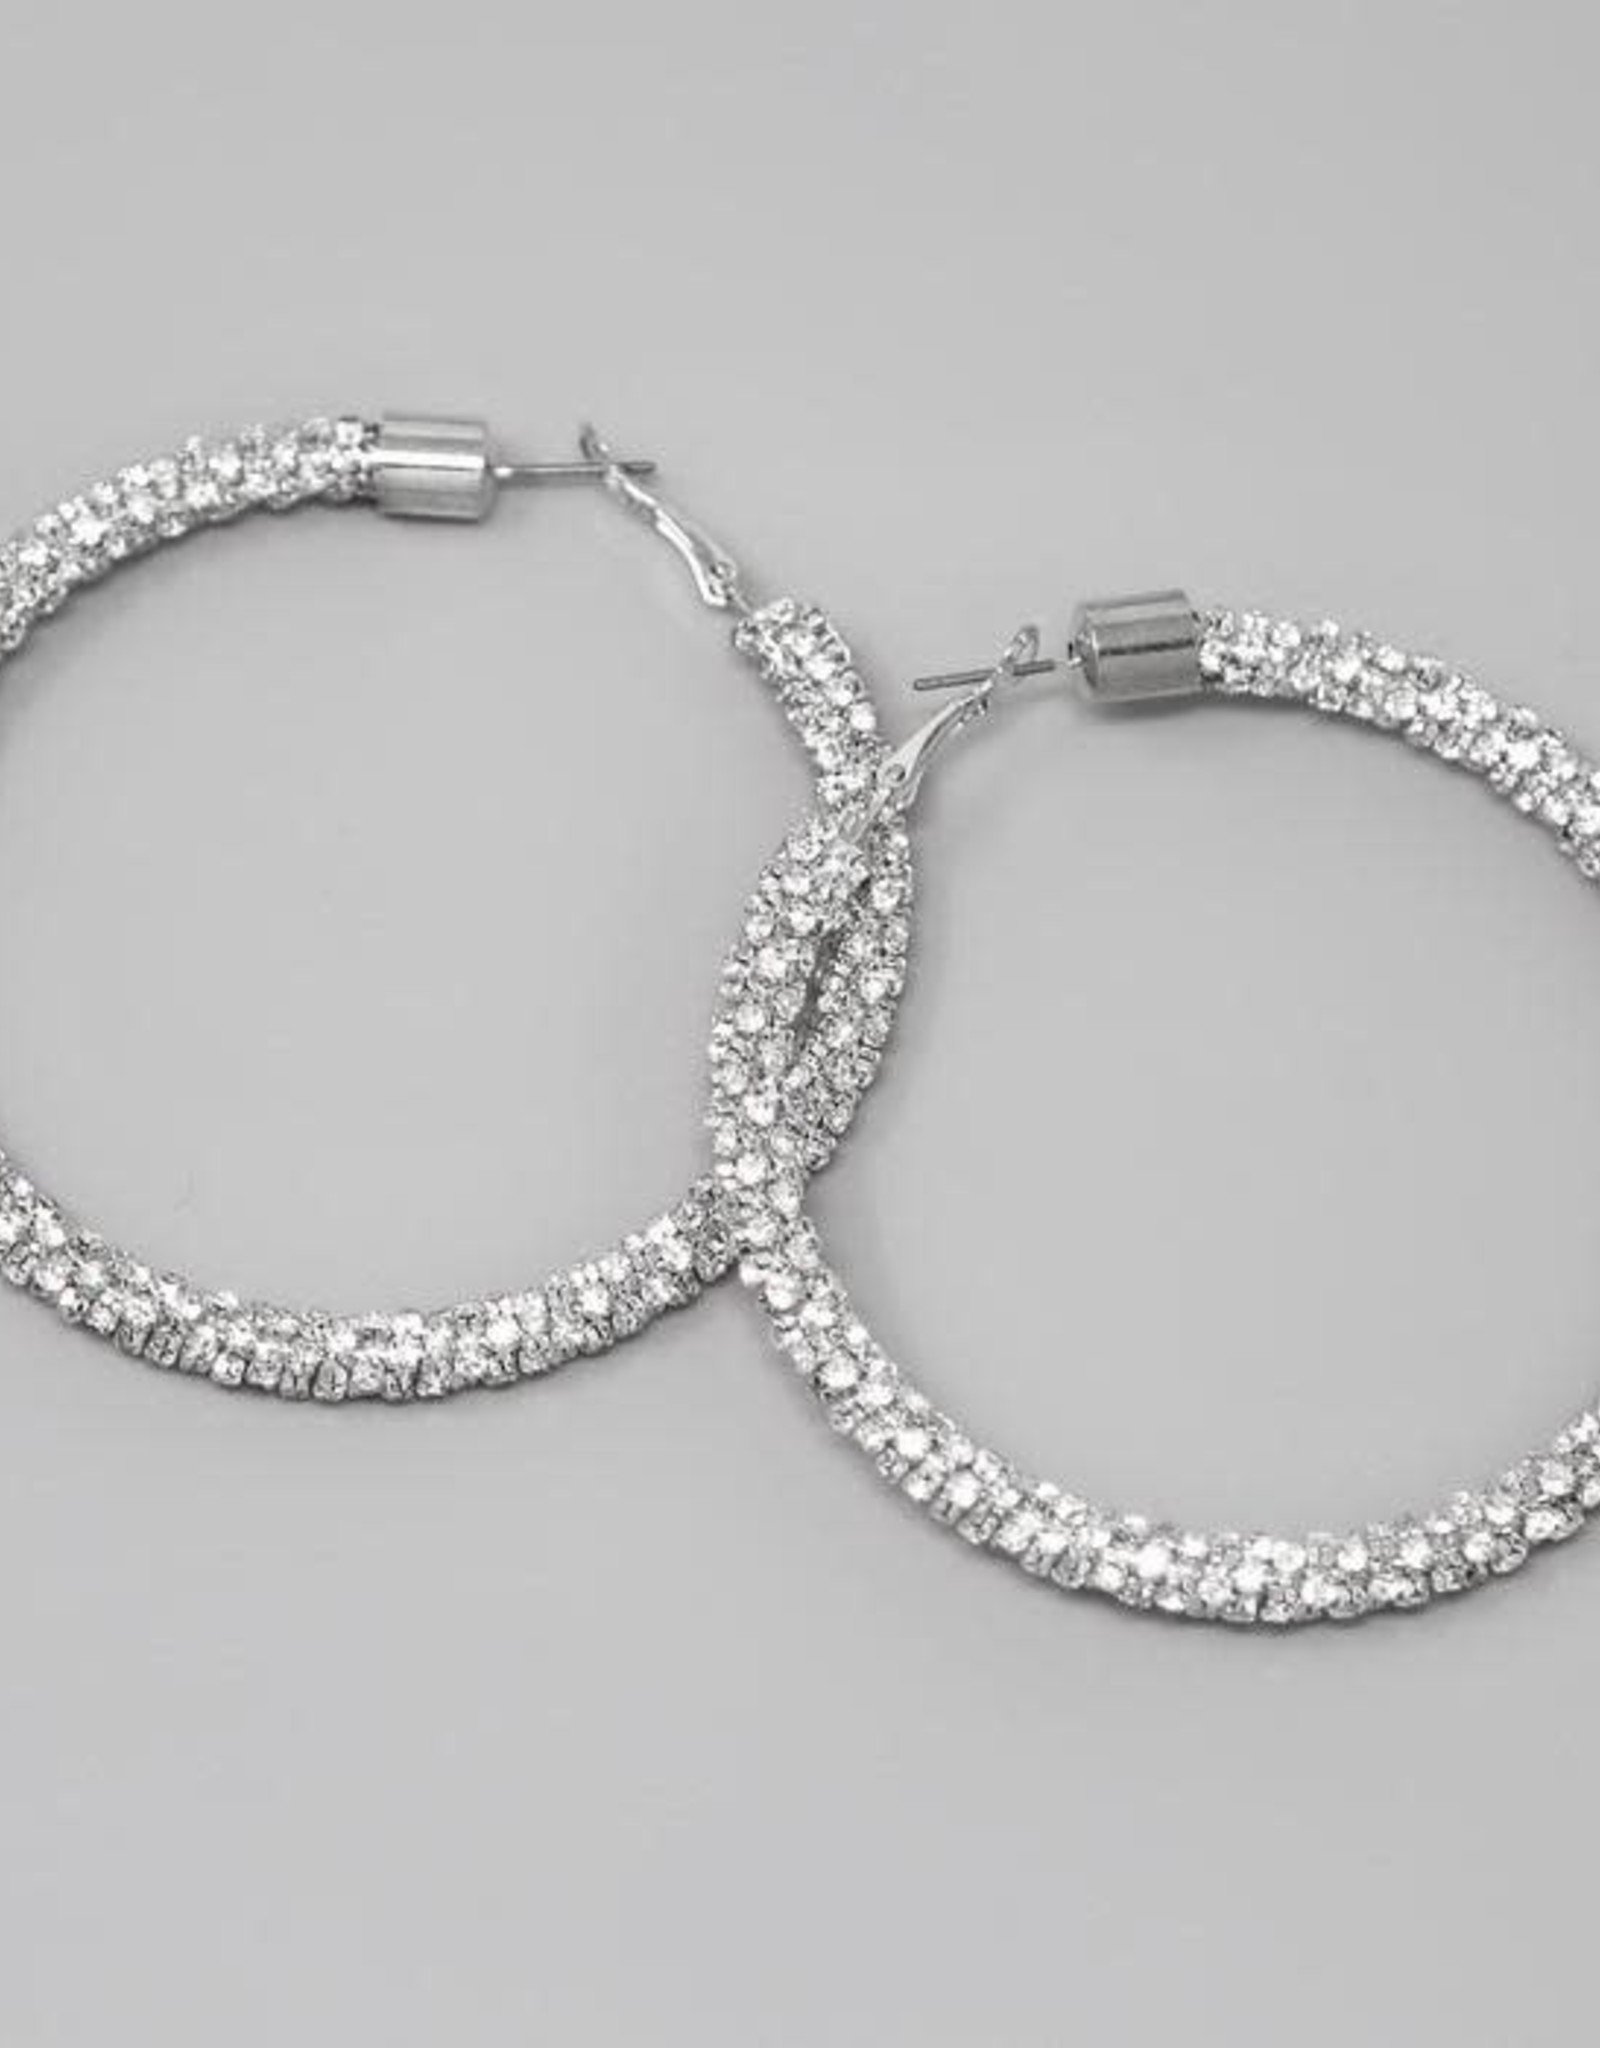 Rhinestone Wrapped Hoop Earrings (70mm) - Silver/Clear